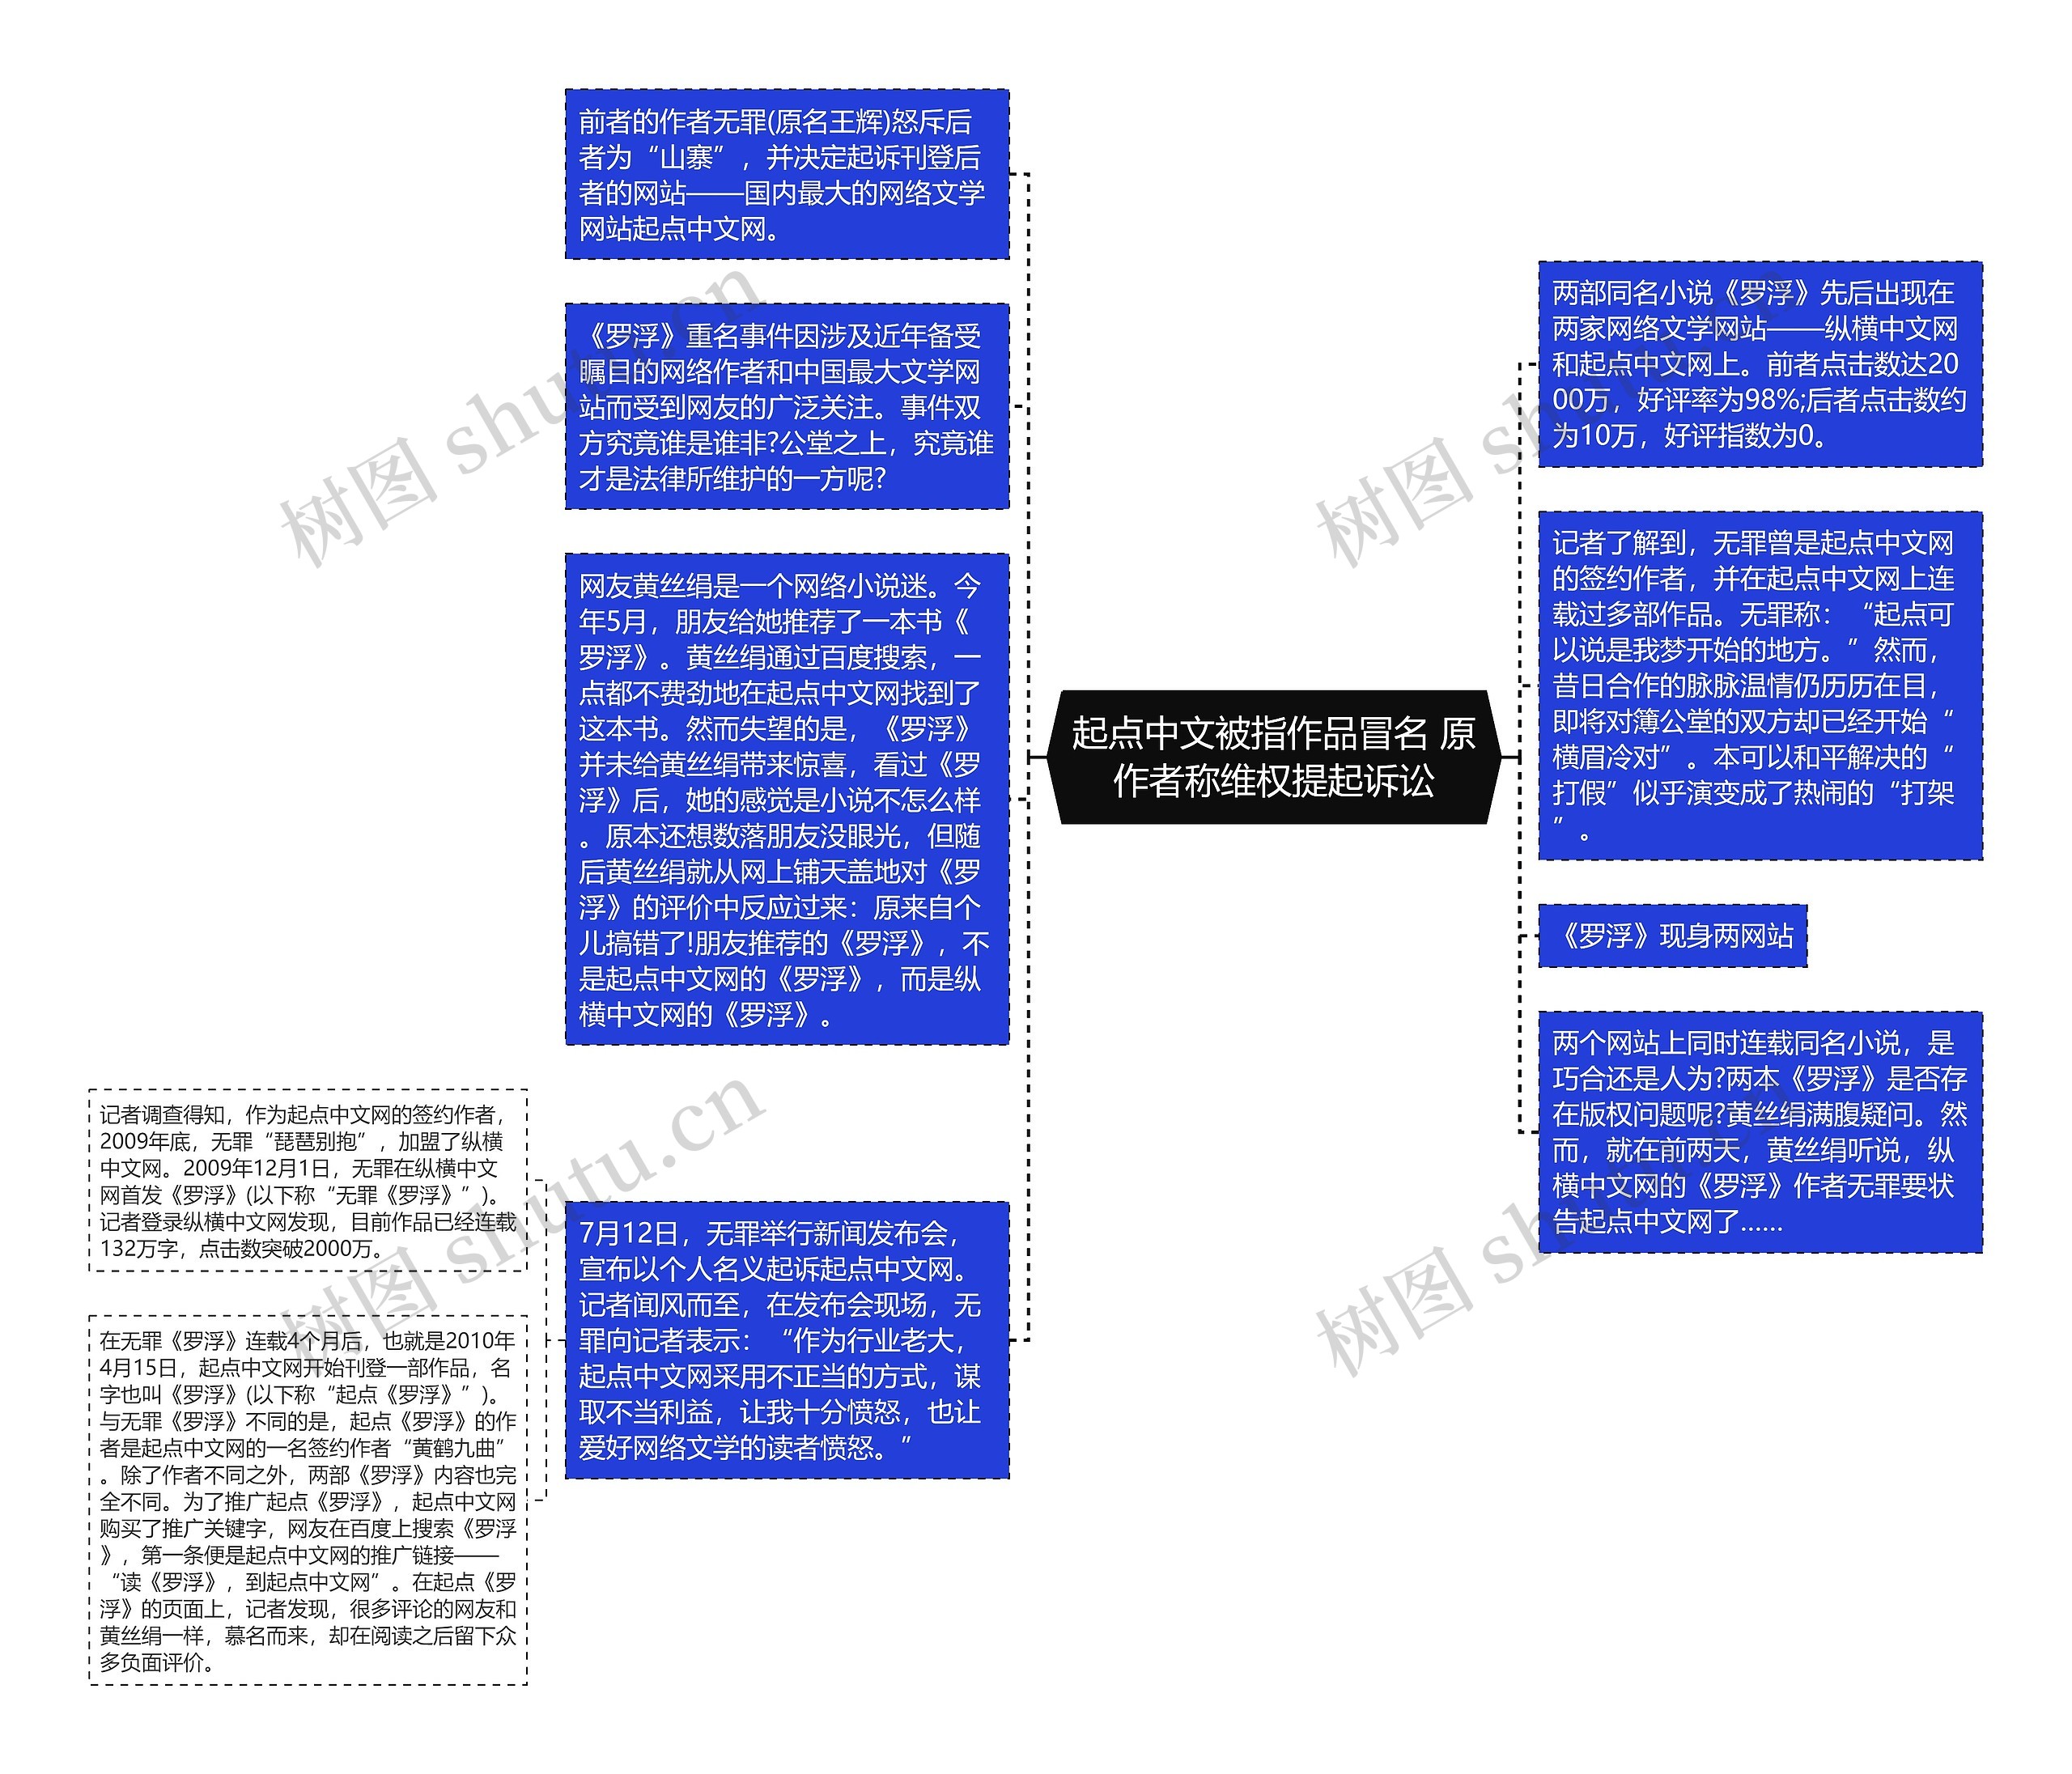 起点中文被指作品冒名 原作者称维权提起诉讼思维导图